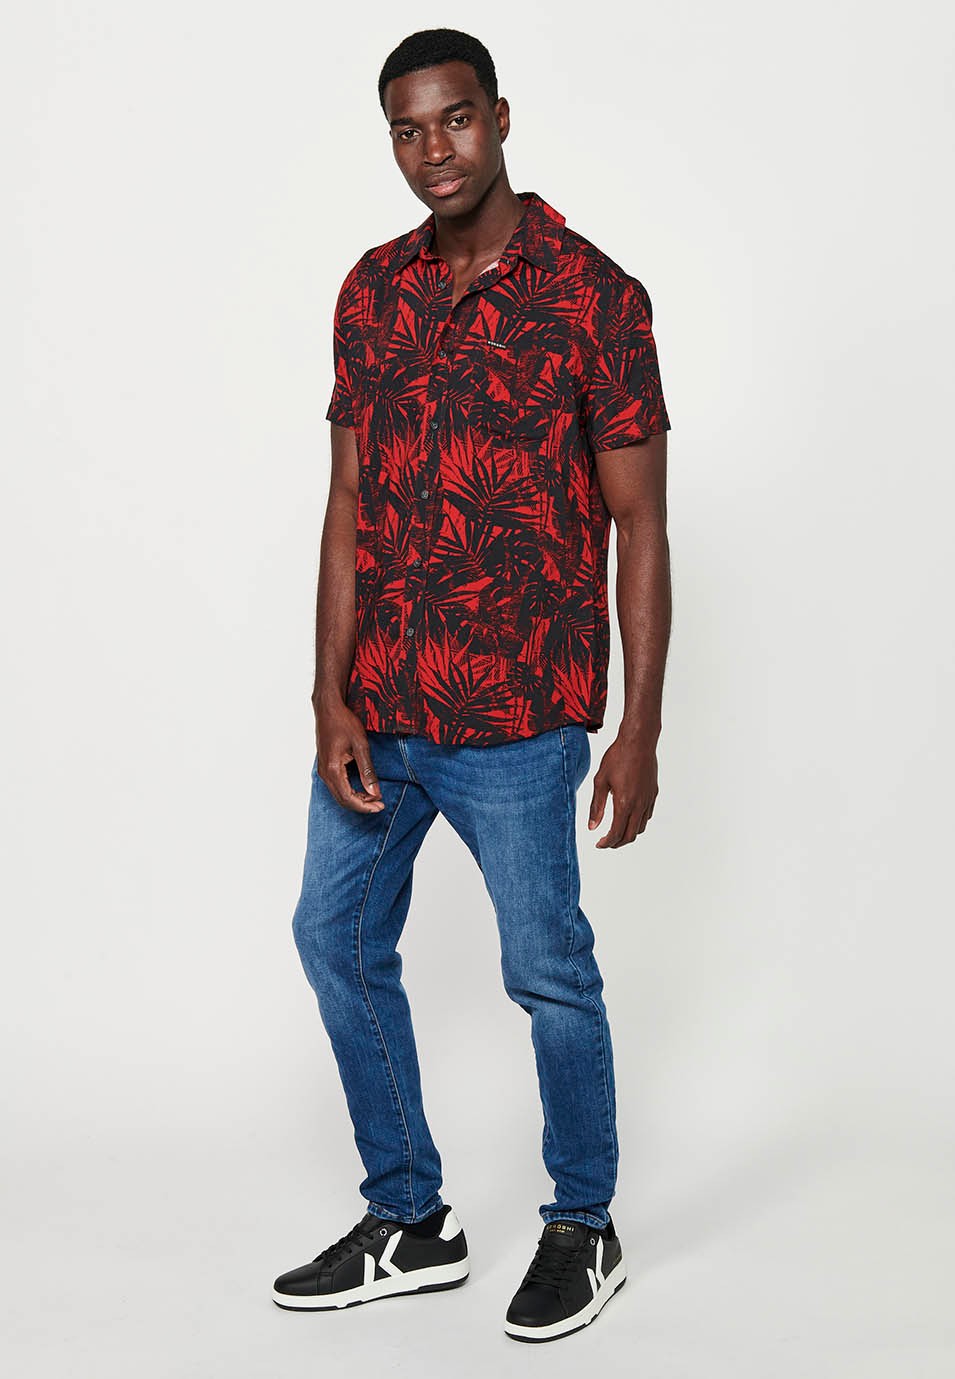 Chemise à manches courtes pour hommes, imprimé floral rouge, fermeture boutonnée sur le devant 4